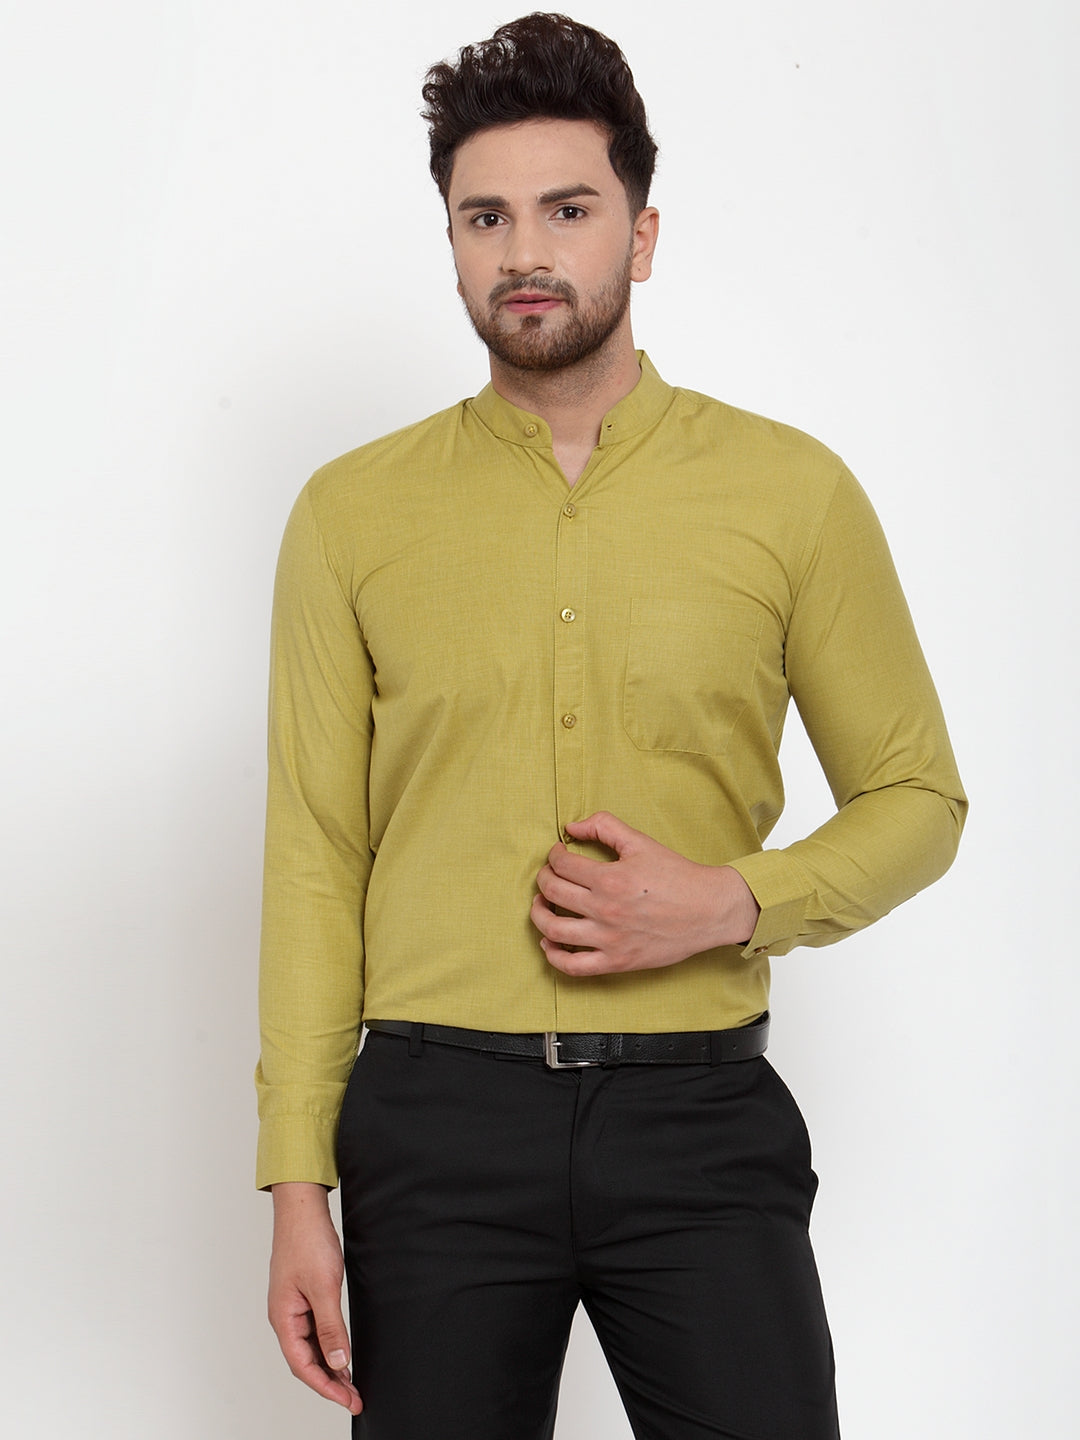 Men's Green Cotton Solid Mandarin Collar Formal Shirts ( SF 757Mehndi ) - Jainish